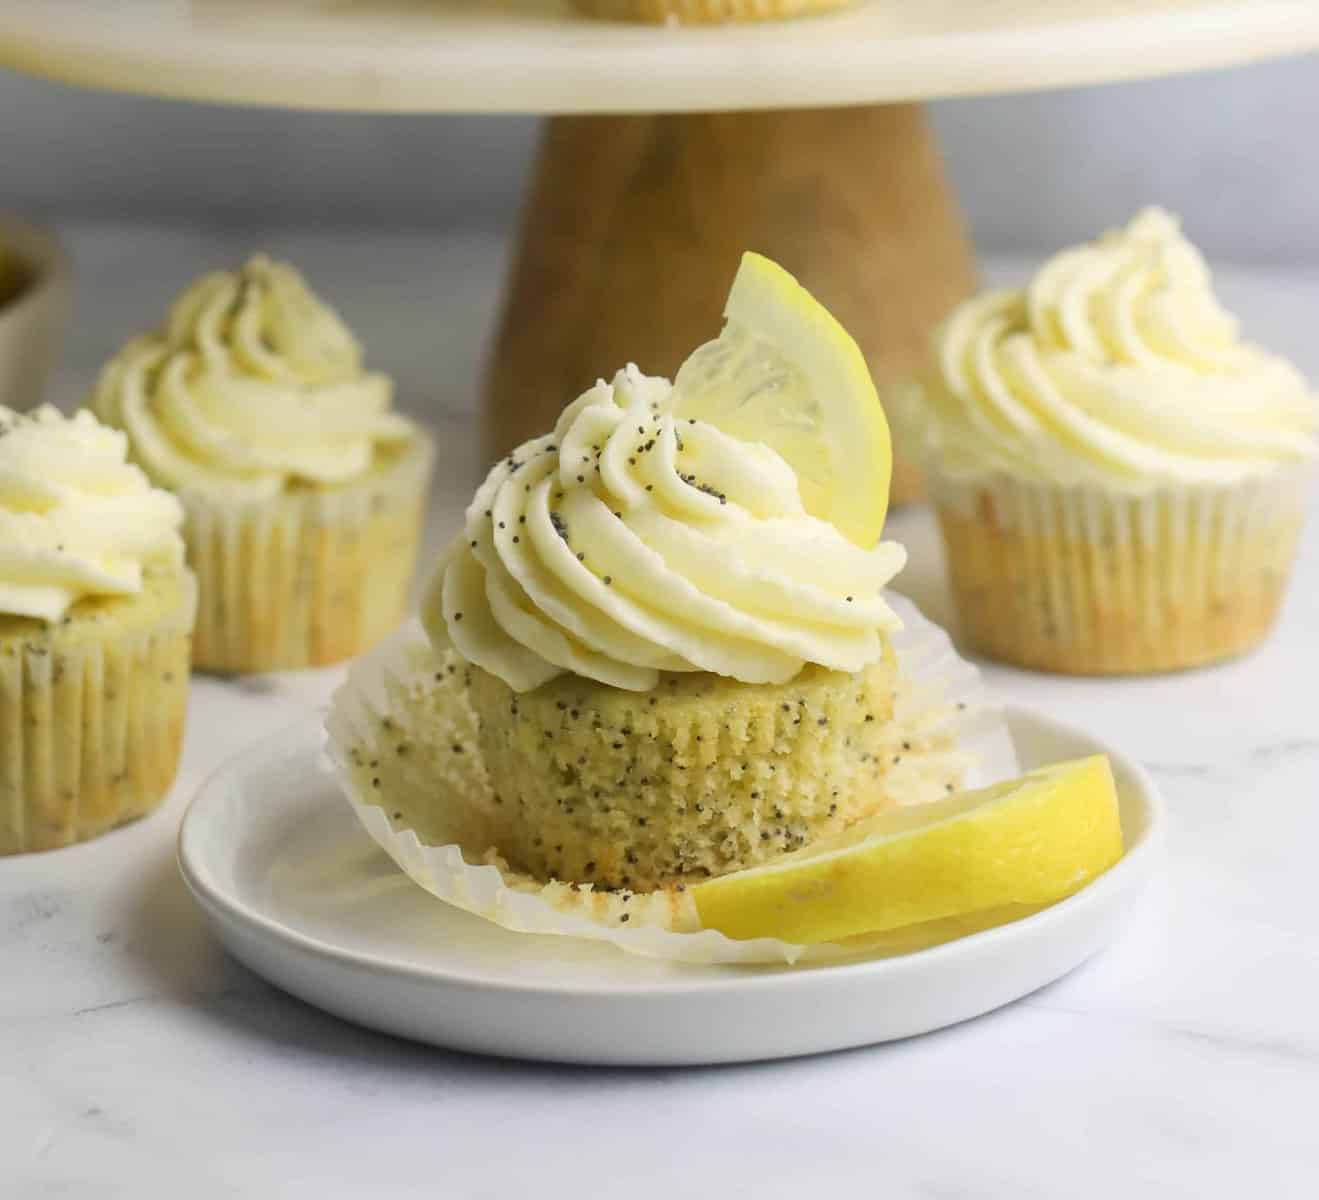 lemon cupcake topped with lemon buttercream frosting